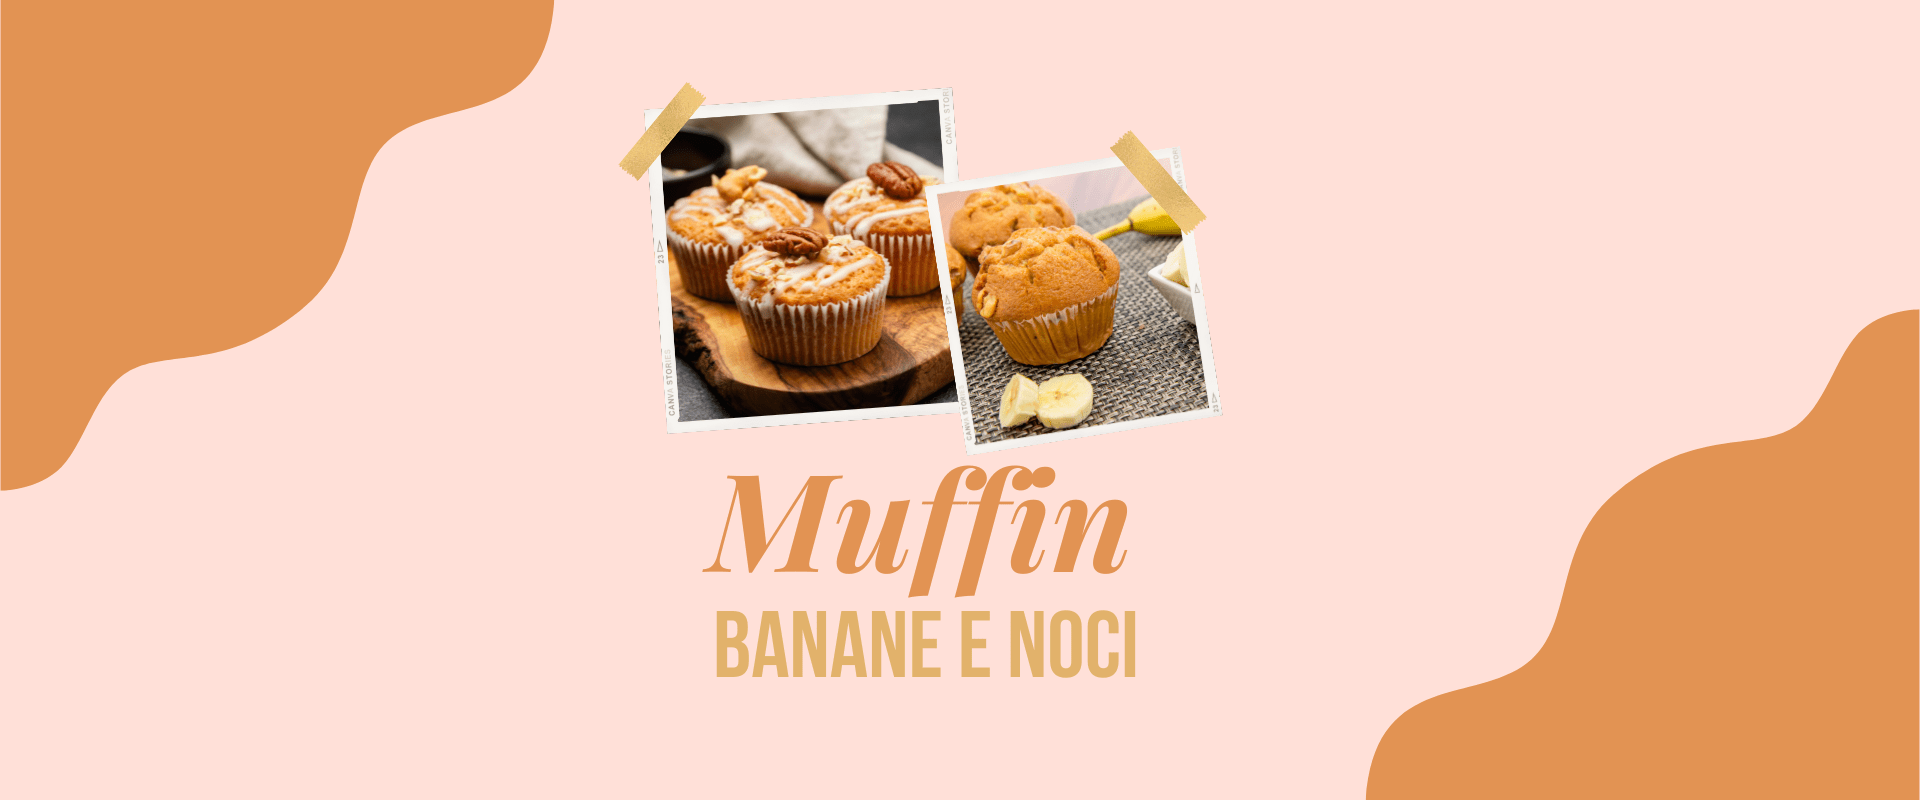 Muffin banane e noci